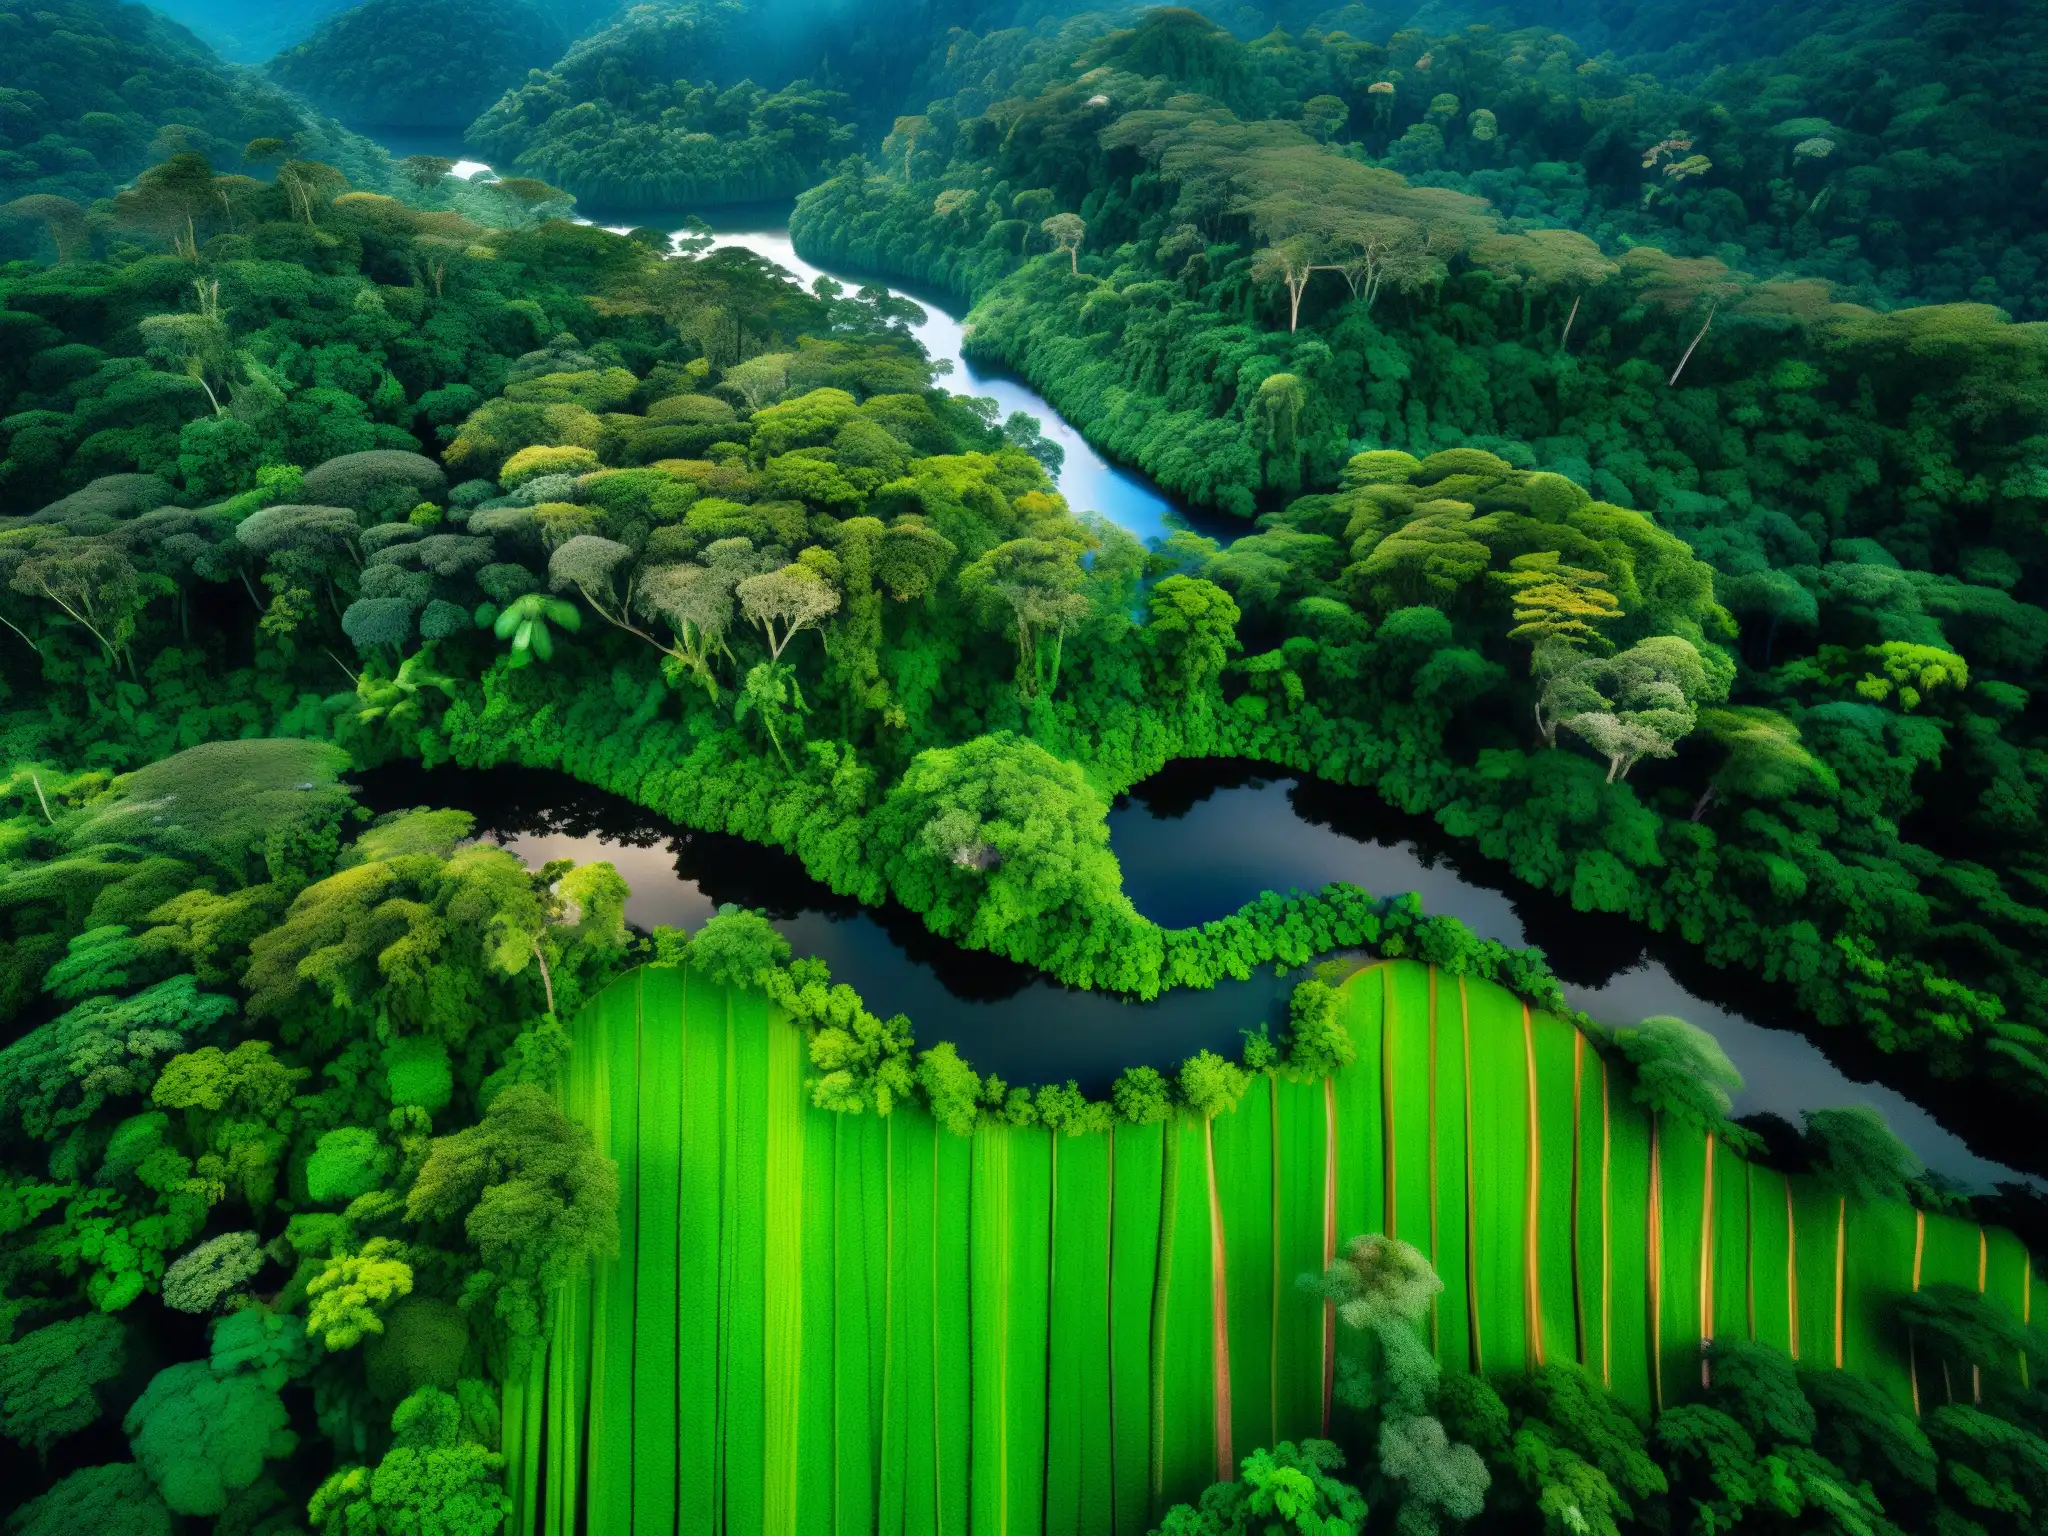 Imagen detallada de la exuberante selva amazónica peruana con árboles imponentes, fauna diversa y vida vegetal exótica